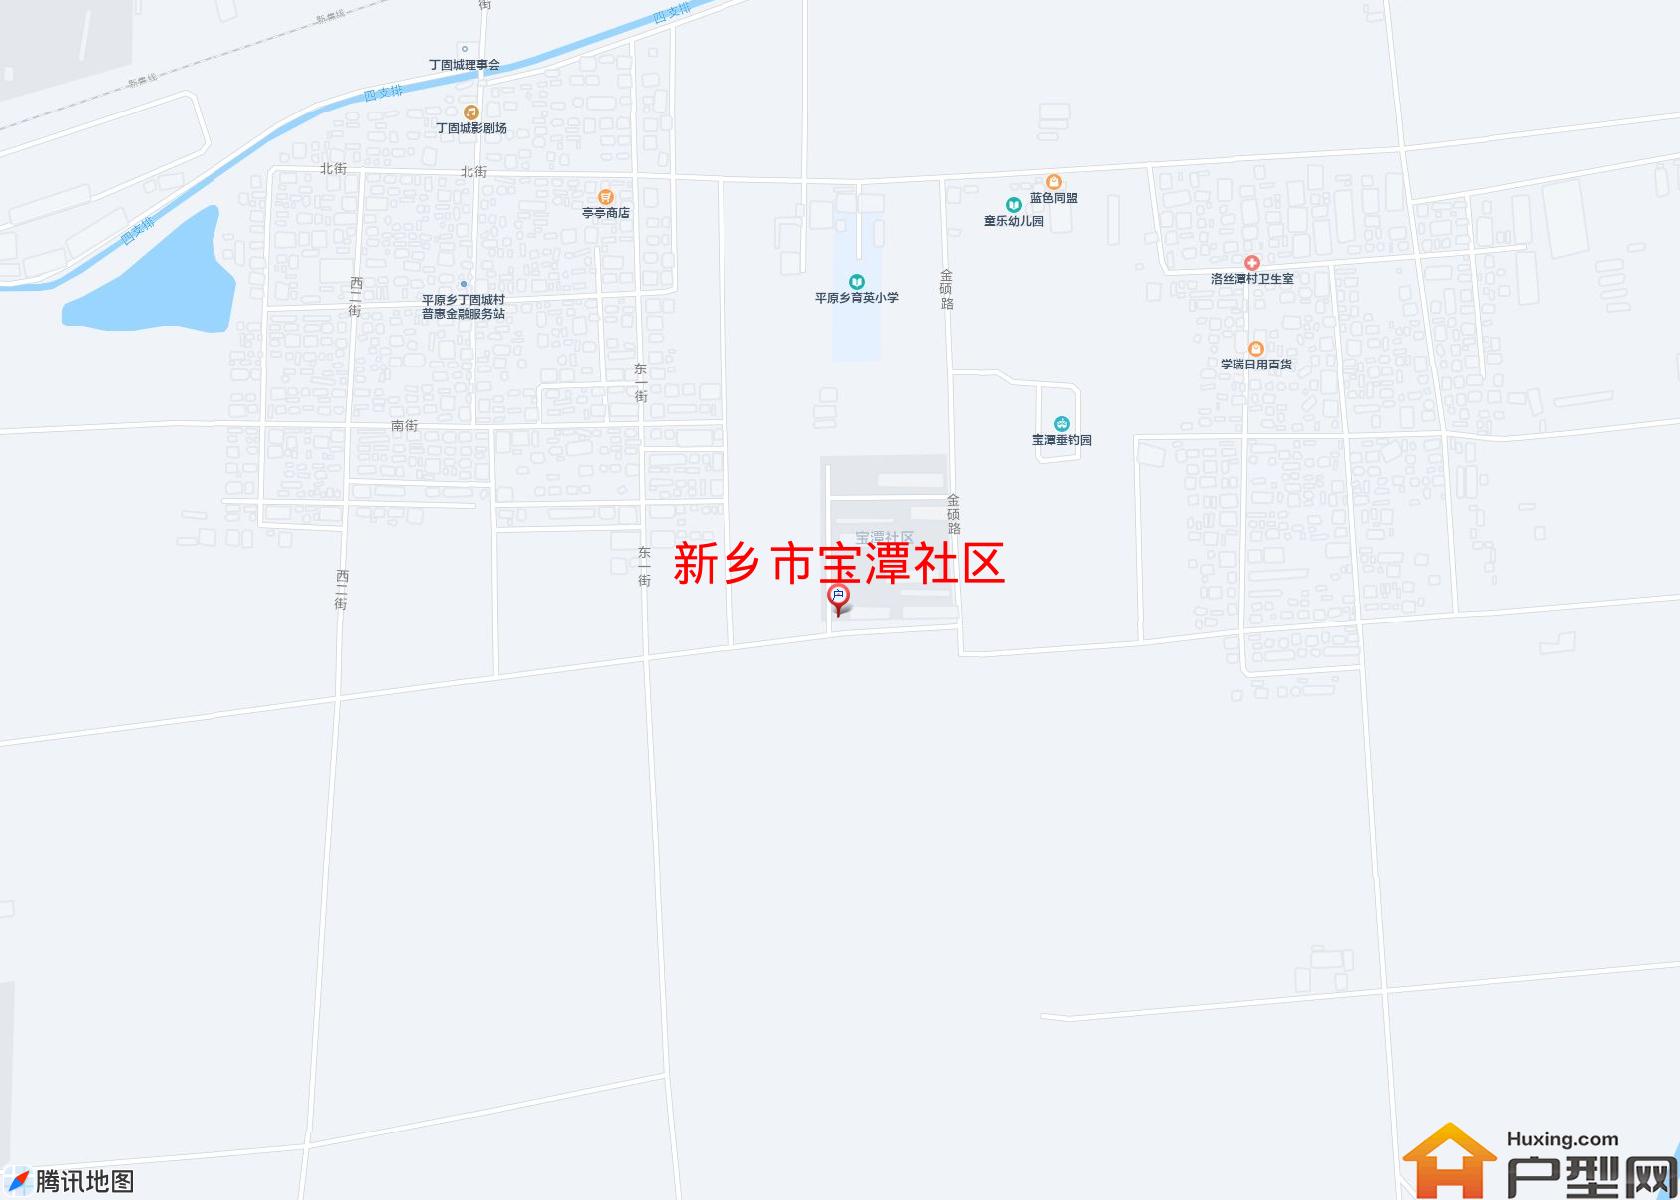 宝潭社区小区 - 户型网